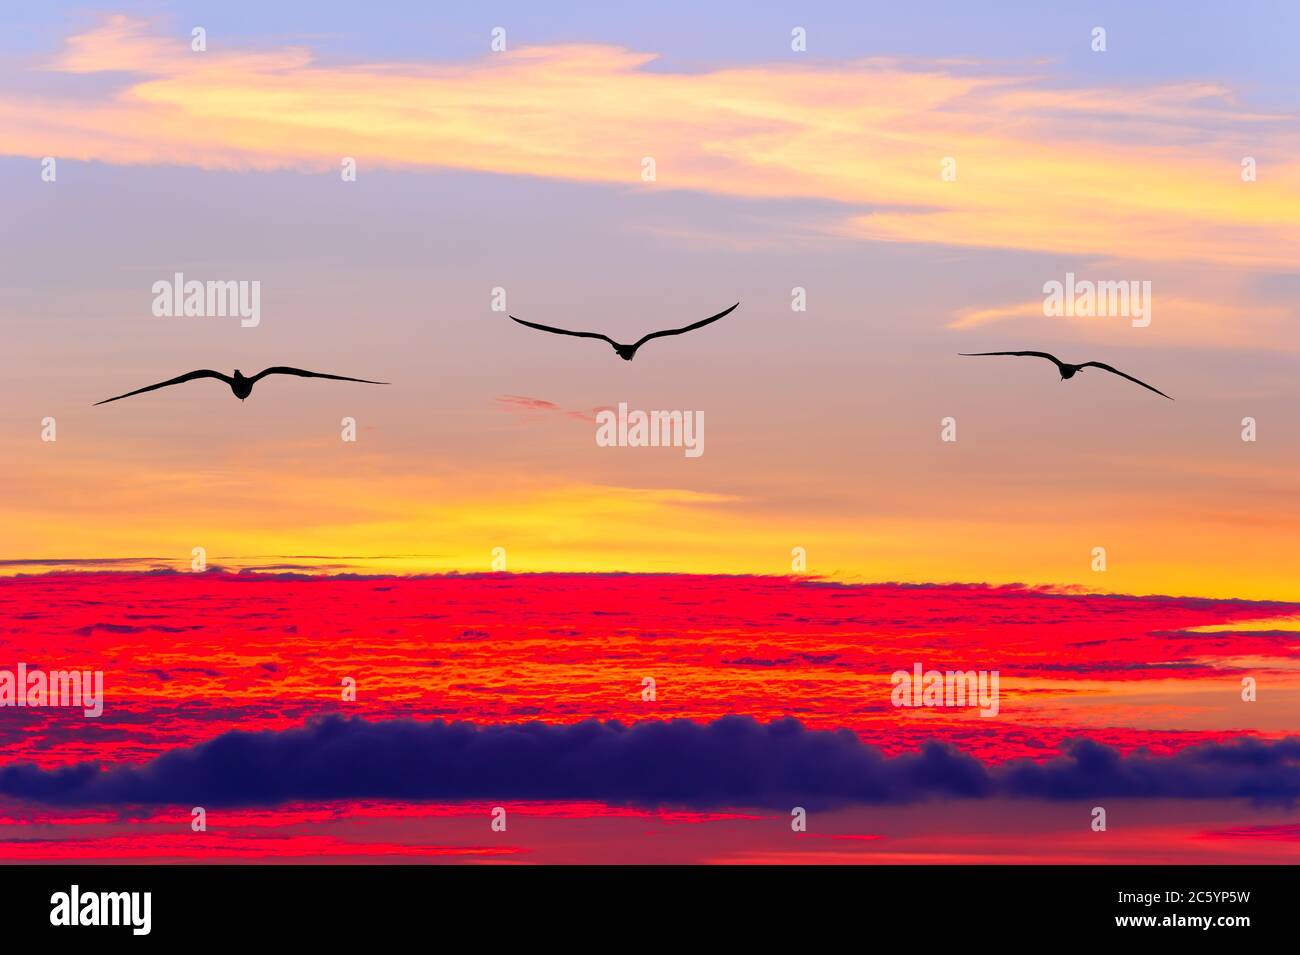 Drei Vögel fliegen über einen farbenfrohen, surrealen Sonnenuntergang Stockfoto